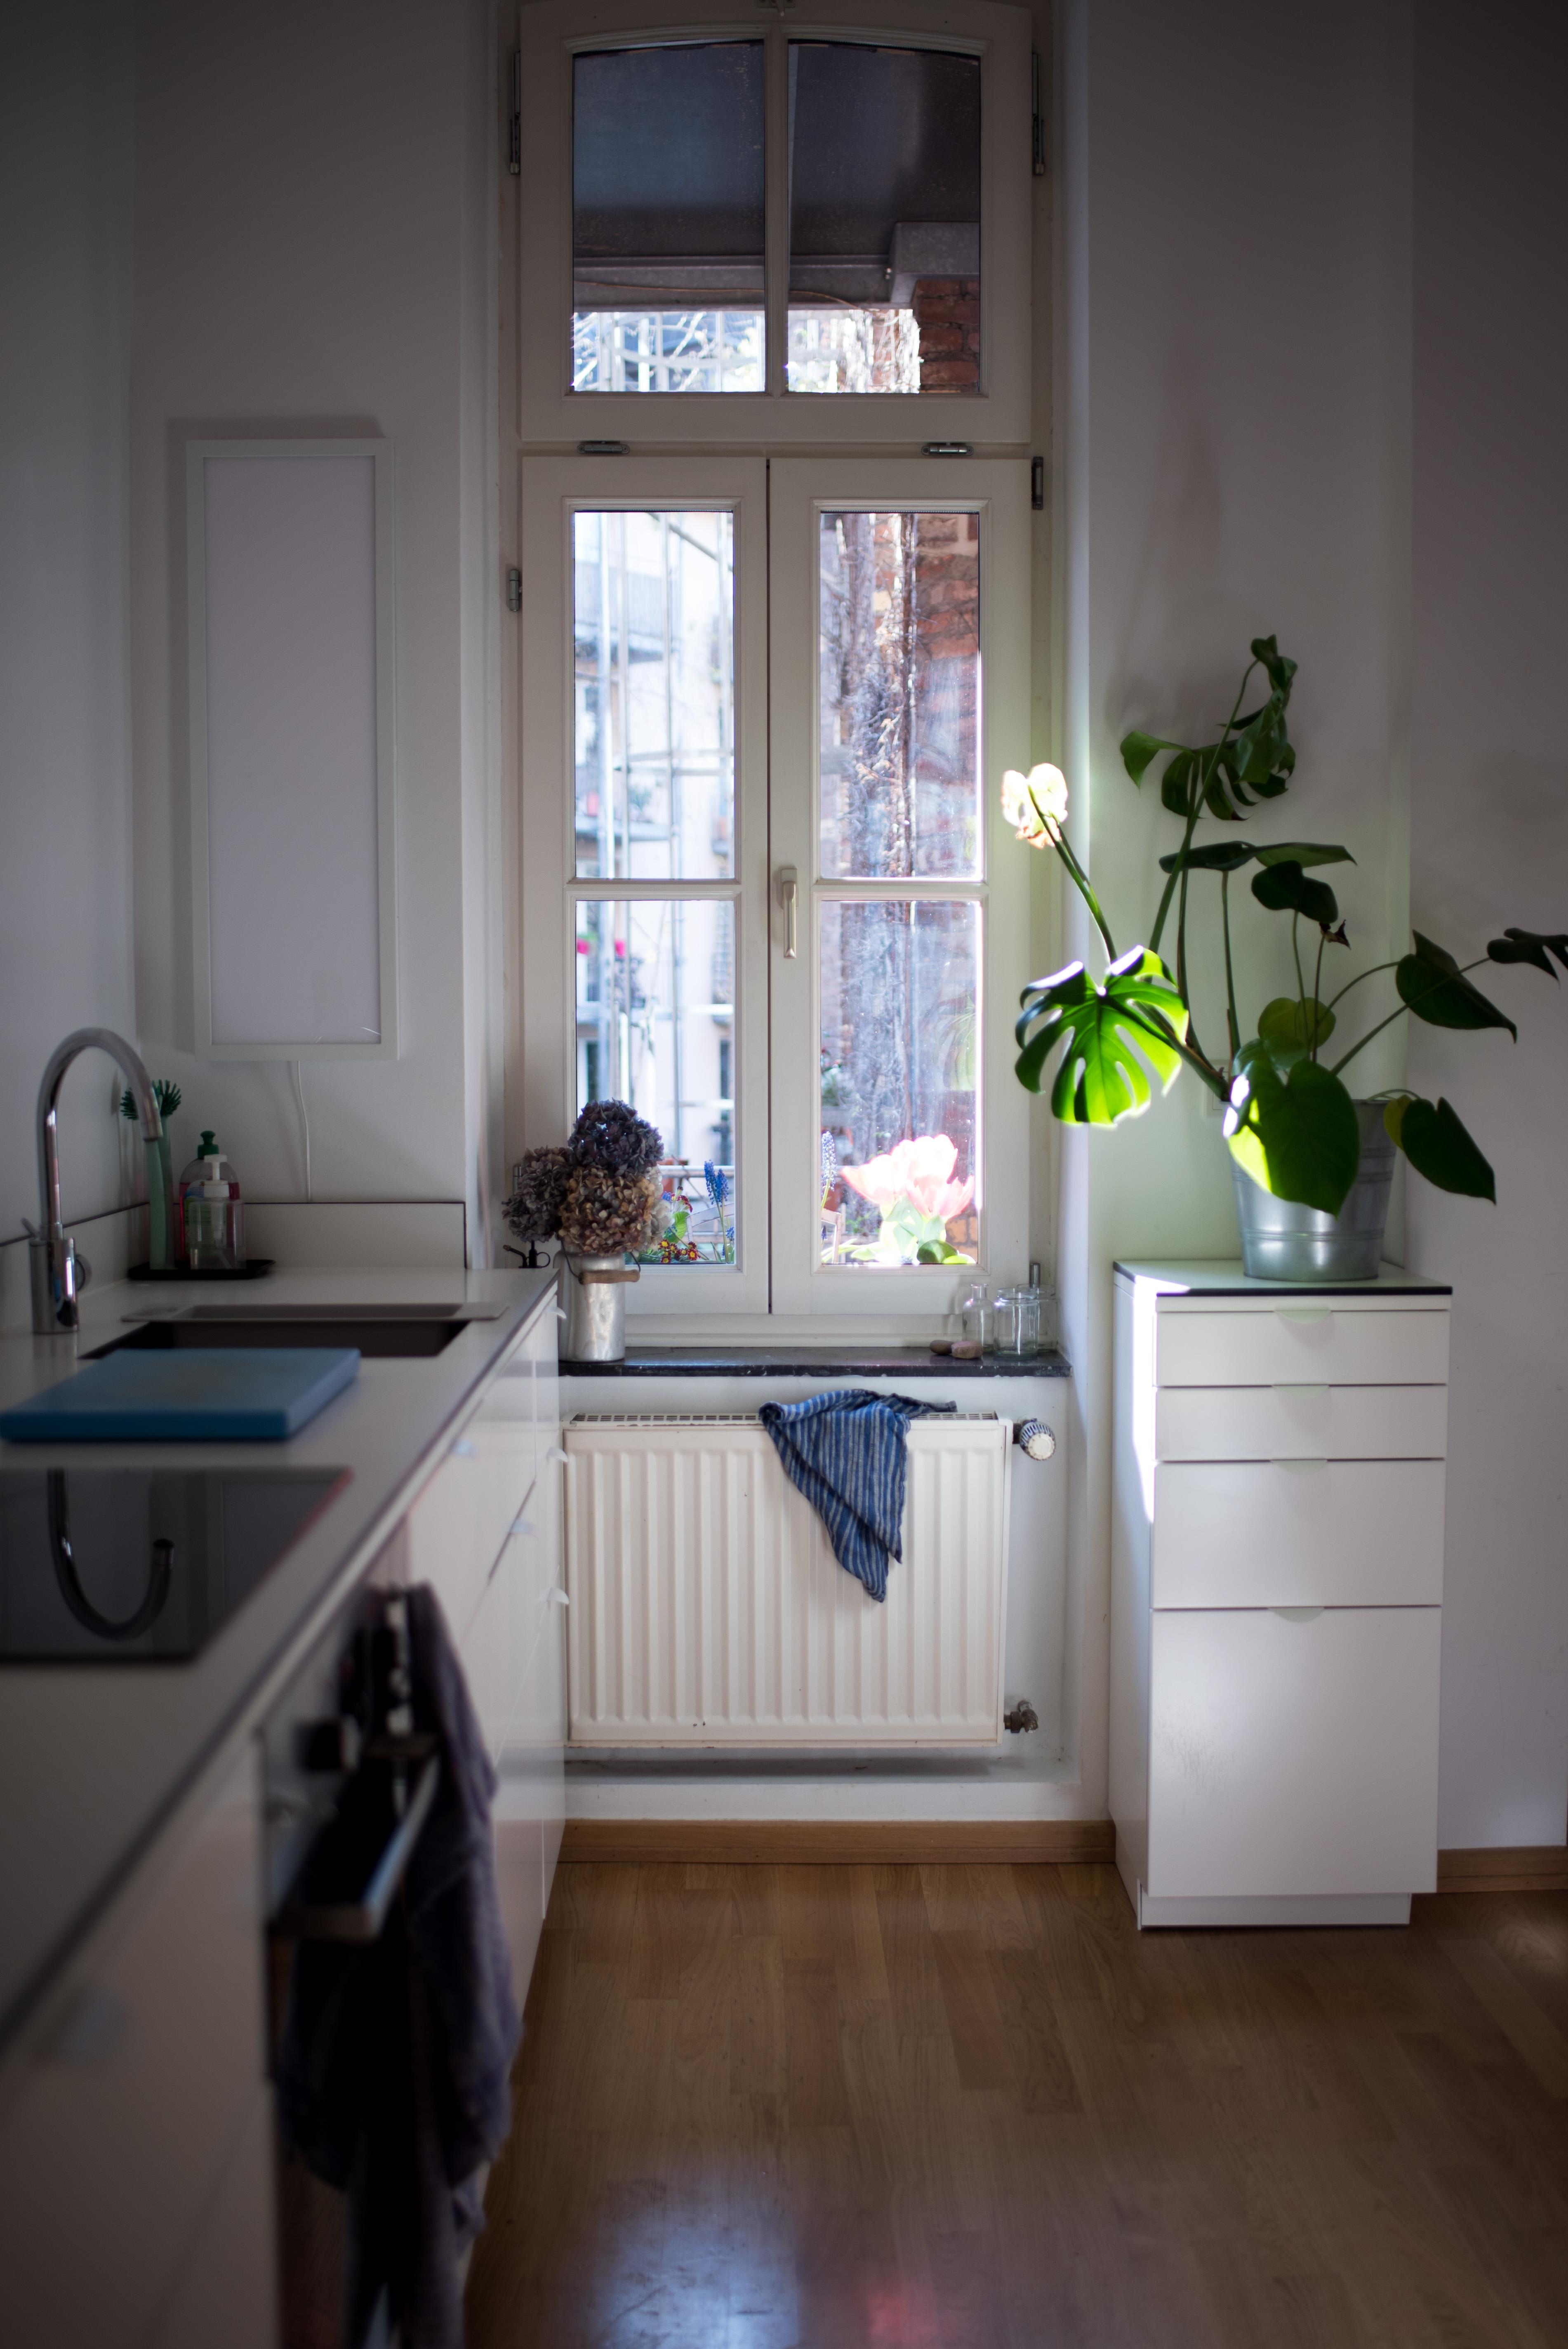 Sonne in der Küche! #küche #wohnküche #altbau #kitcheninspo